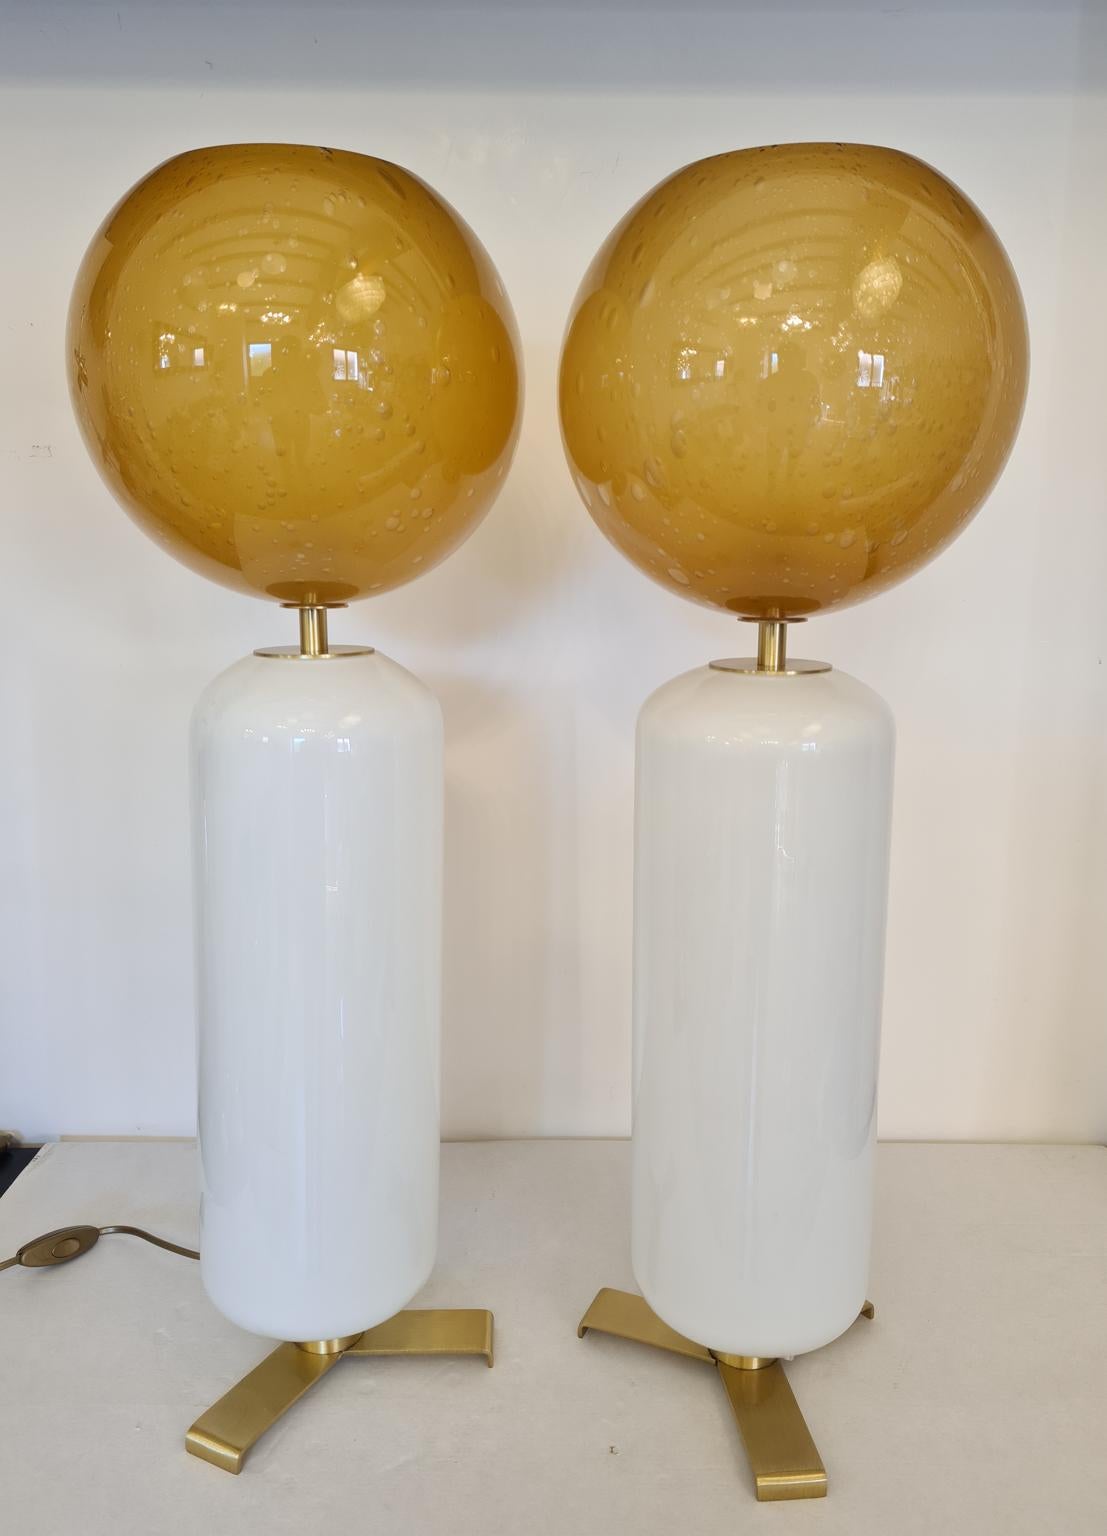 Paire exclusive de lampes de table en verre de Murano de couleur blanche avec une sphère supérieure en ambre pulegoso.
Pulegoso traitement sont des bulles à l'intérieur de la couleur.
Lampe fabriquée avec beaucoup de soin et de précision par notre